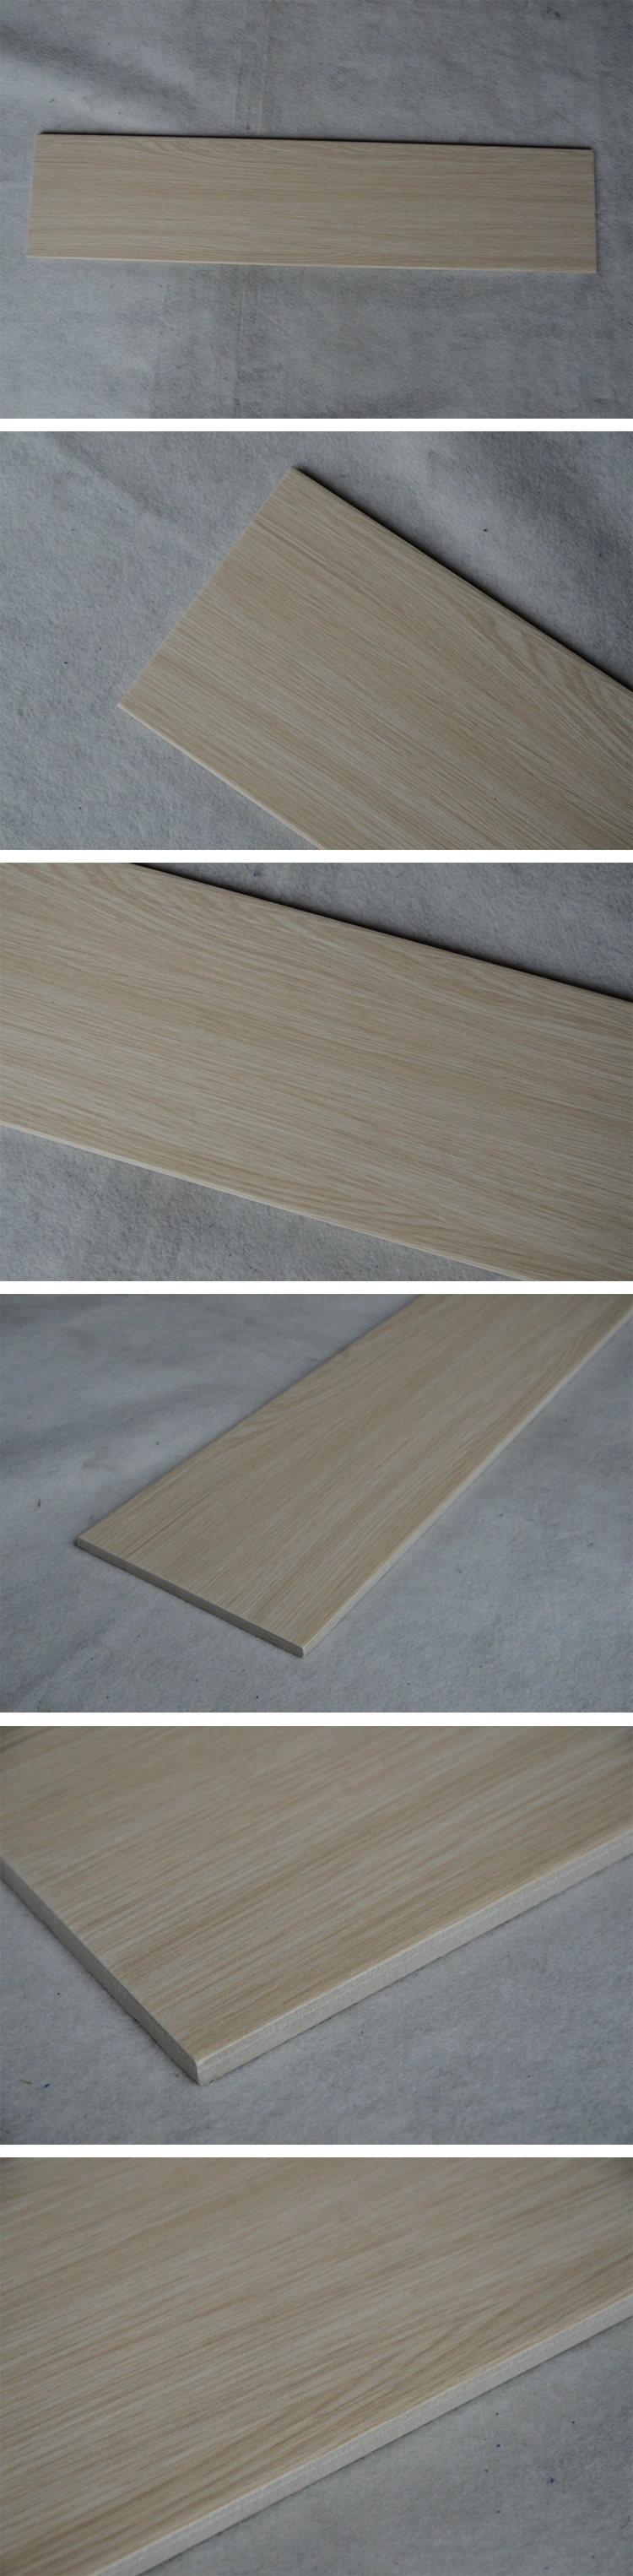 200X900mm Brazilian Cherry Wood Homogeneous Wood Floor Tile